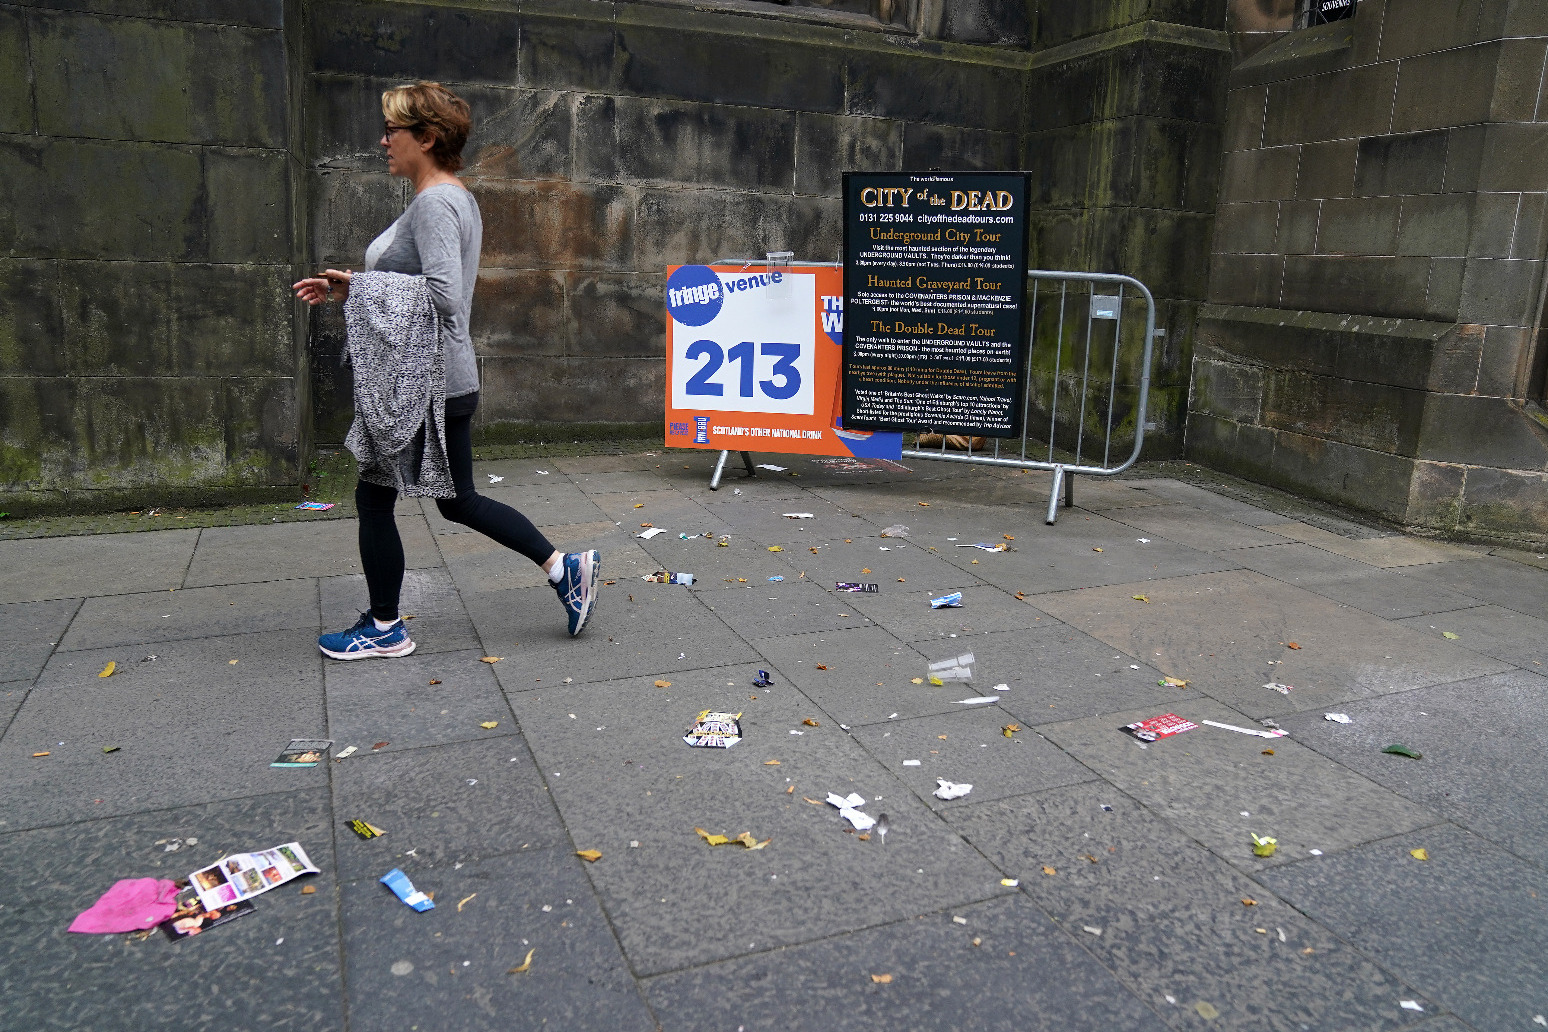 Edinburgh waste workers very angry as strike begins across the city